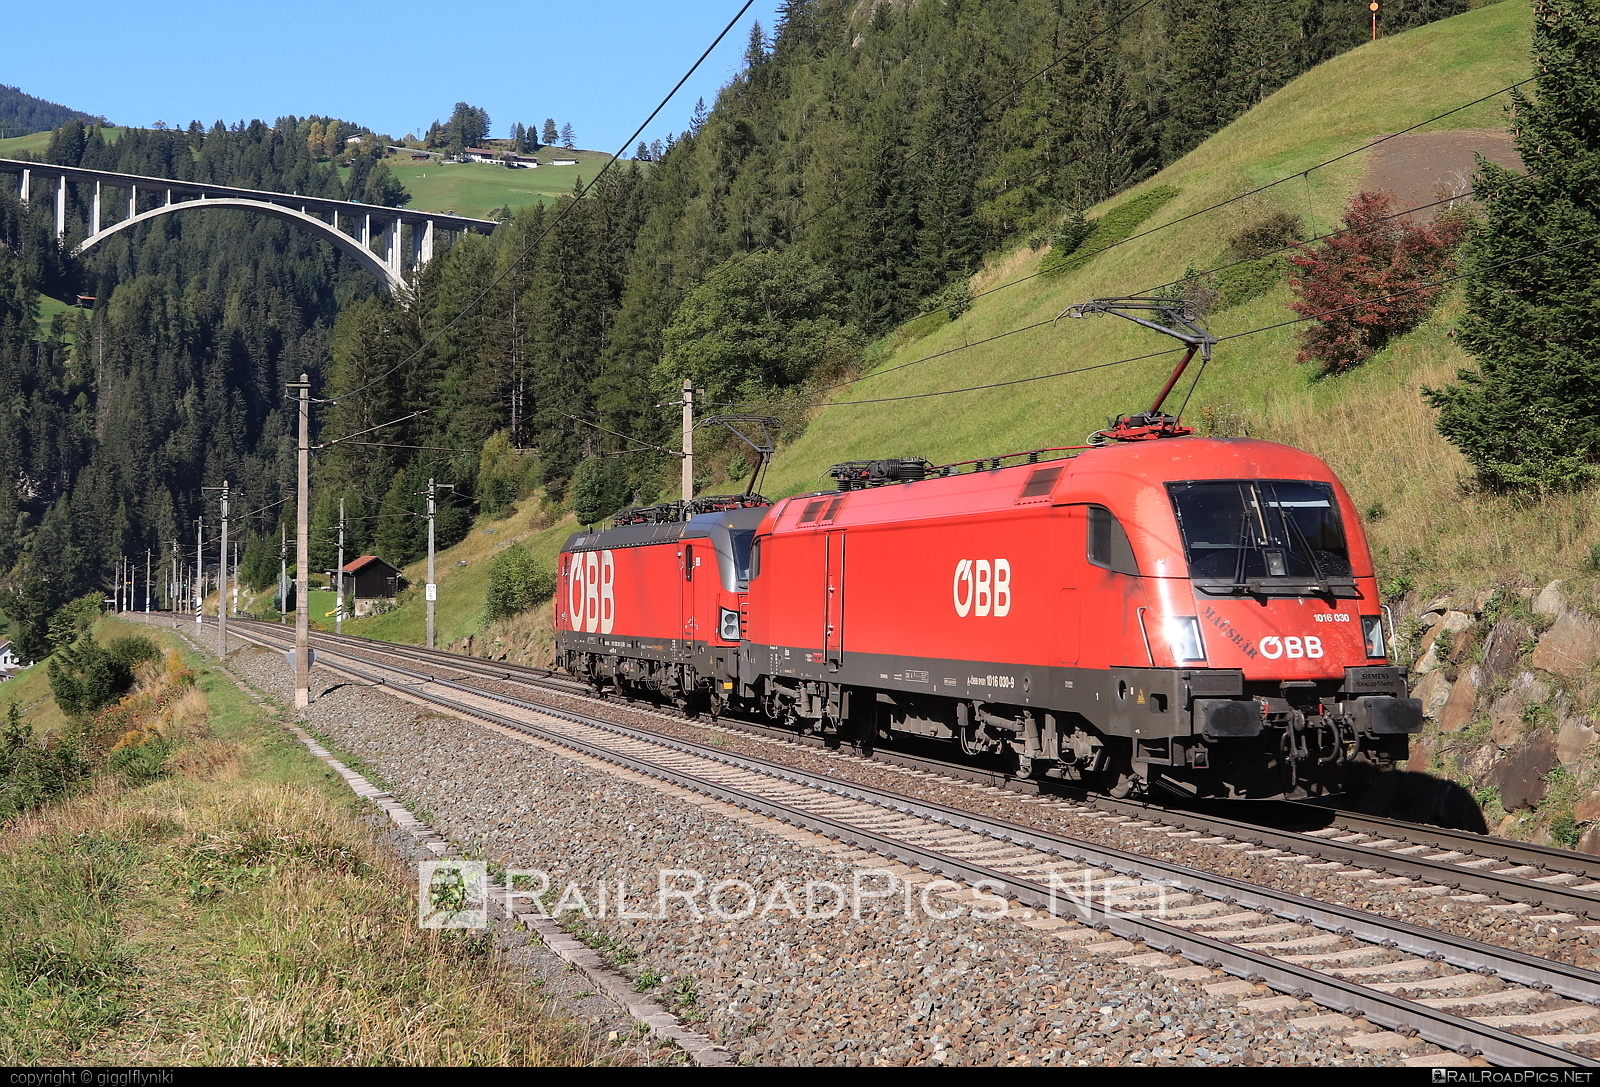 Siemens ES 64 U2 - 1016 030 operated by Rail Cargo Austria AG #es64 #es64u2 #eurosprinter #obb #osterreichischebundesbahnen #rcw #siemens #siemensEs64 #siemensEs64u2 #siemenstaurus #taurus #tauruslocomotive